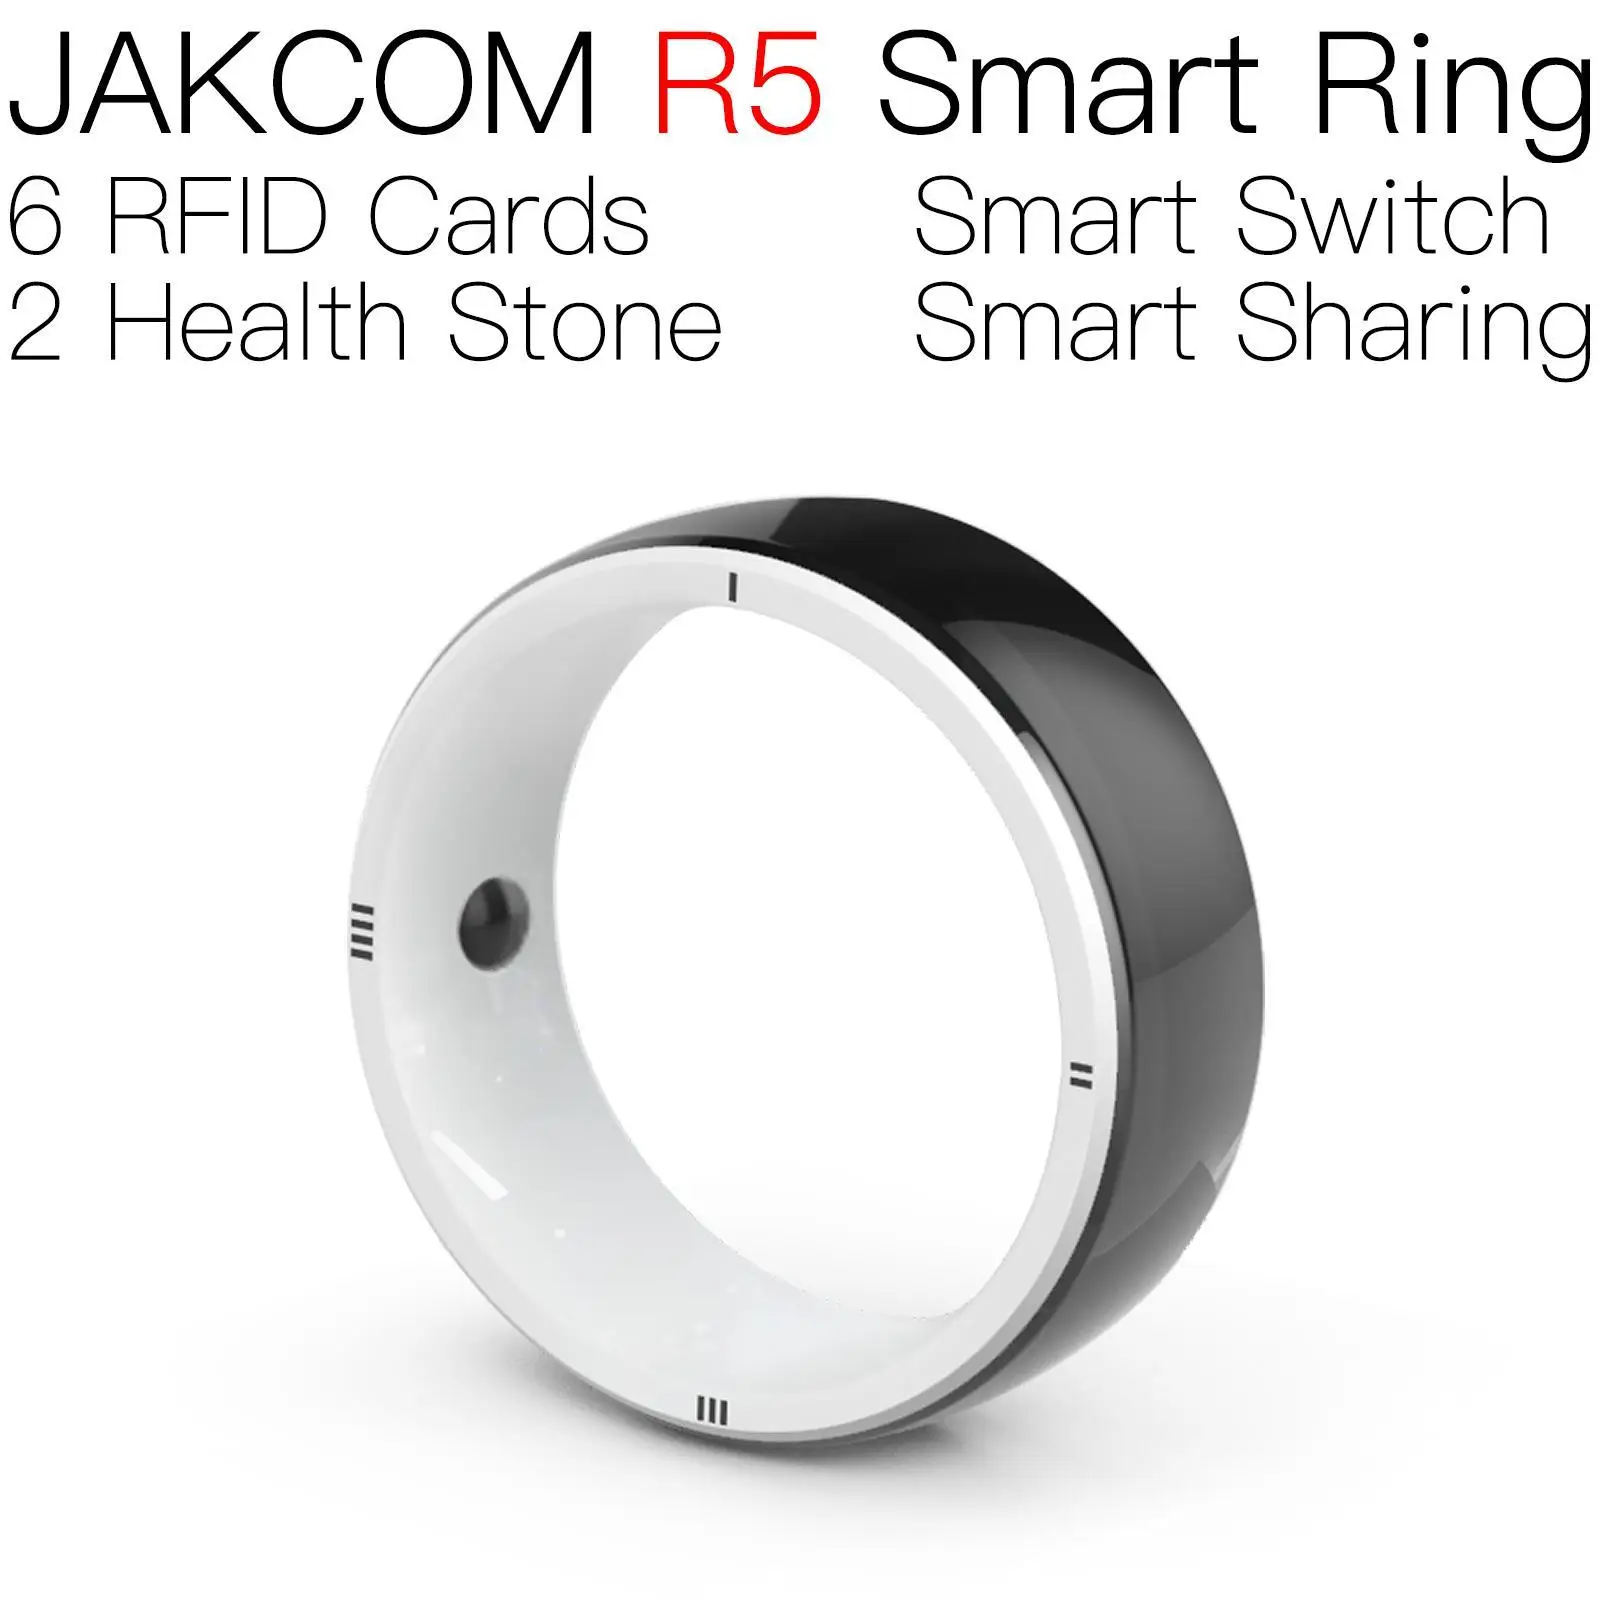 

JAKCOM R5 смарт-кольцо для мужчин и женщин carte hw7max серия nfc7 собаки ветеринарный Металл 125 рчид стандартная наклейка uid uhf этикетки 5000 шт.